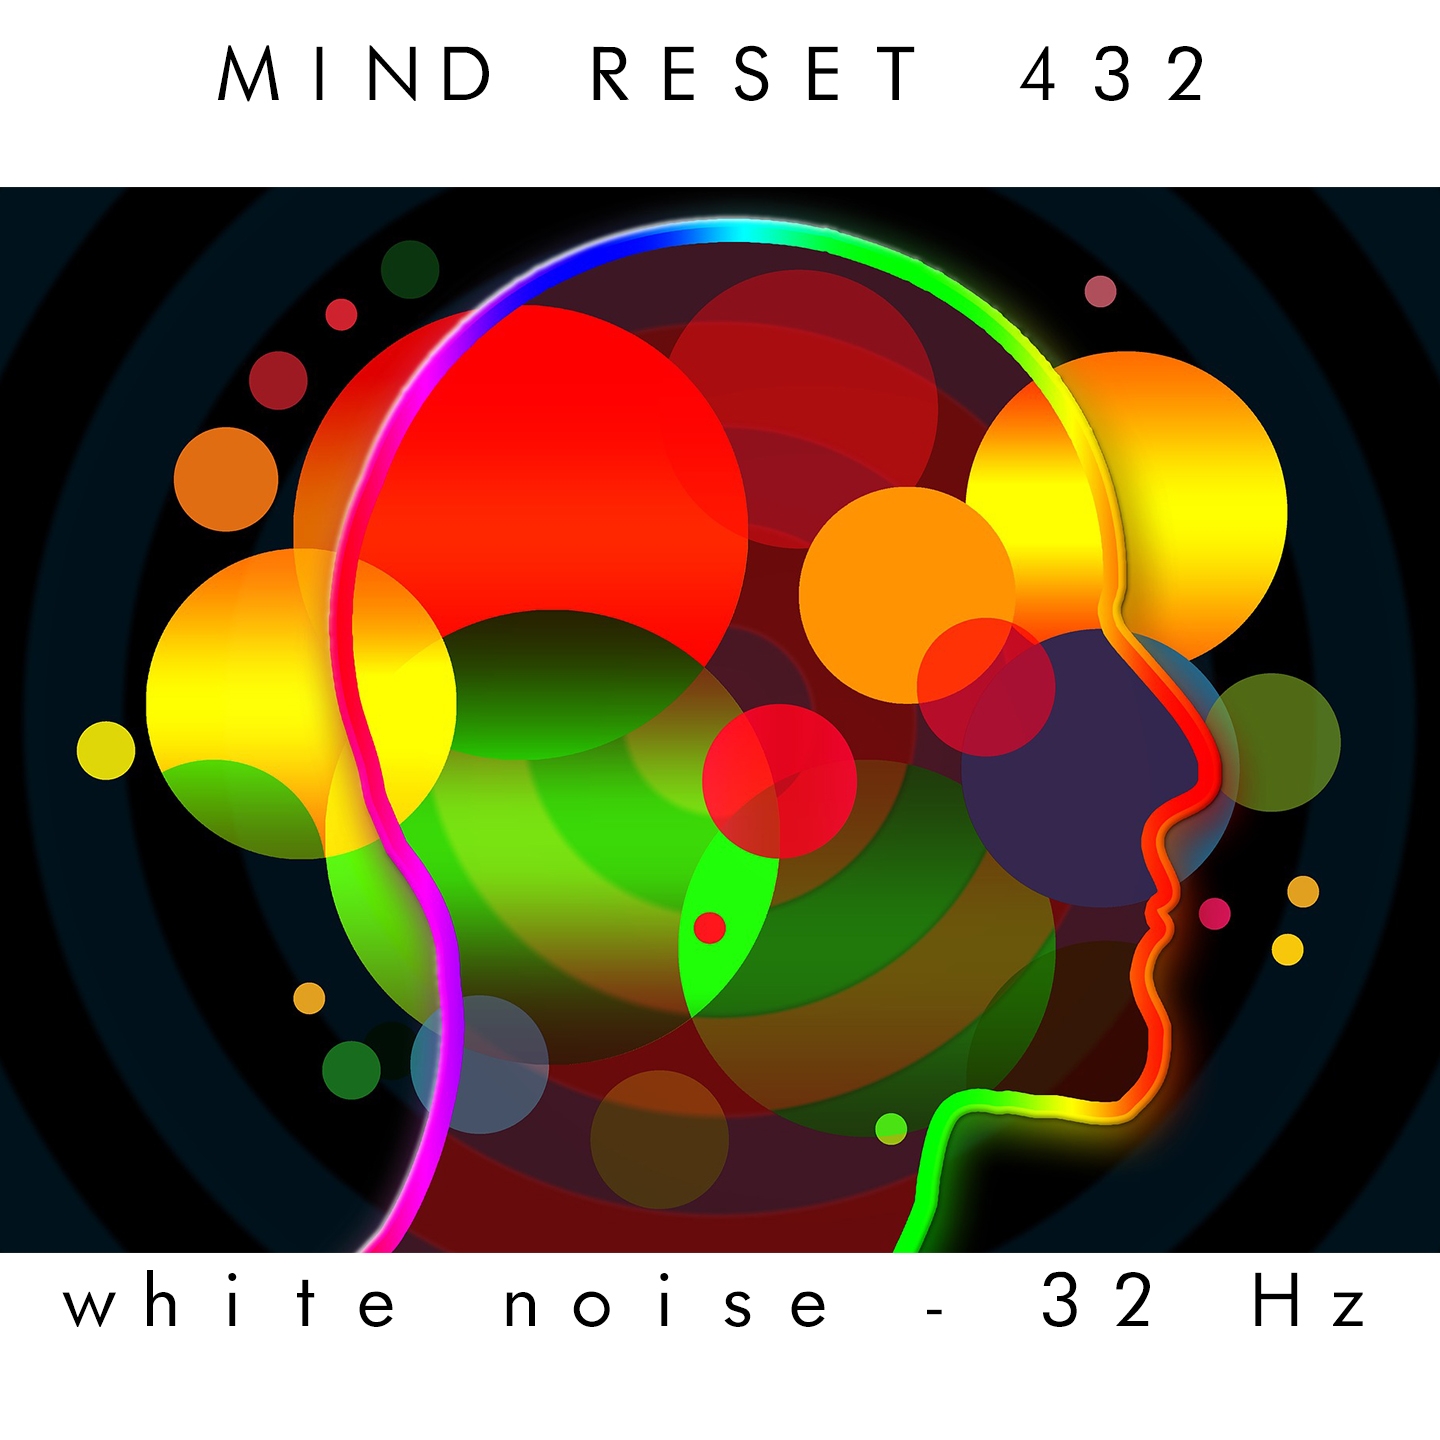 White Noise - 32 Hz